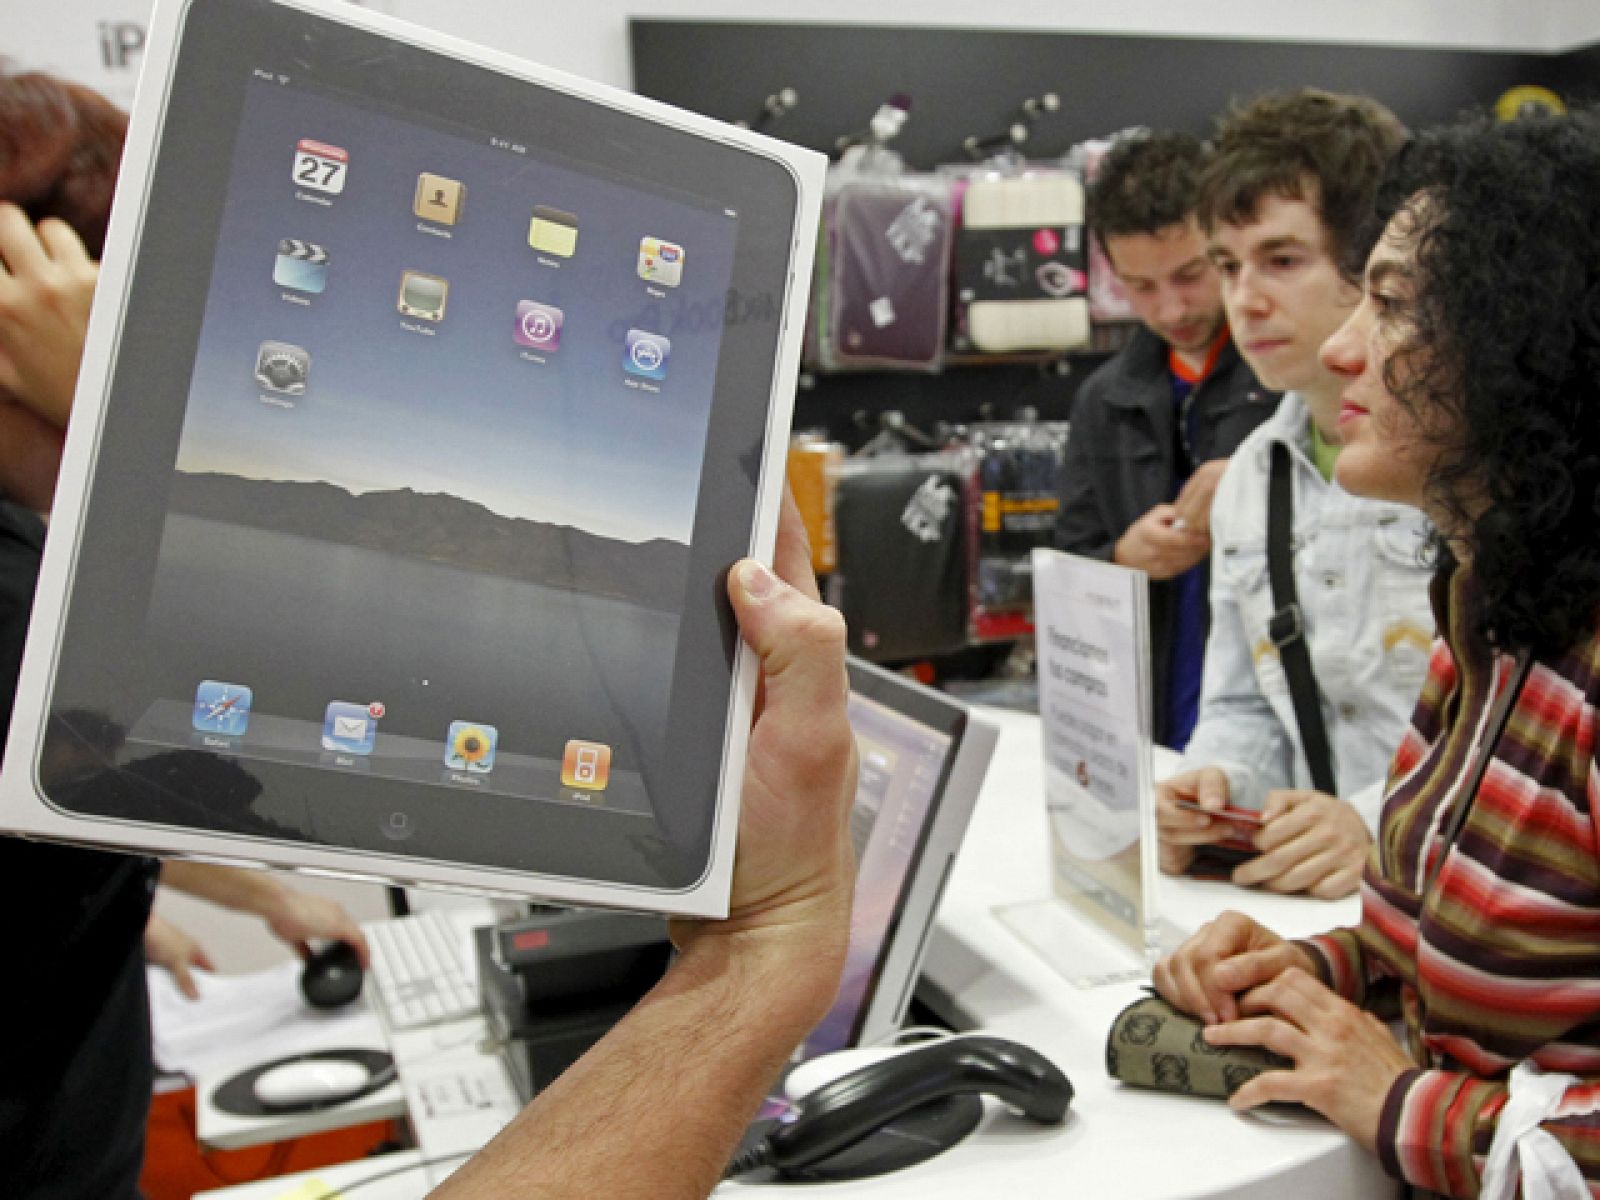 El iPad, el nuevo ordenador de mano de Apple, ya puede comprarse hoy en España